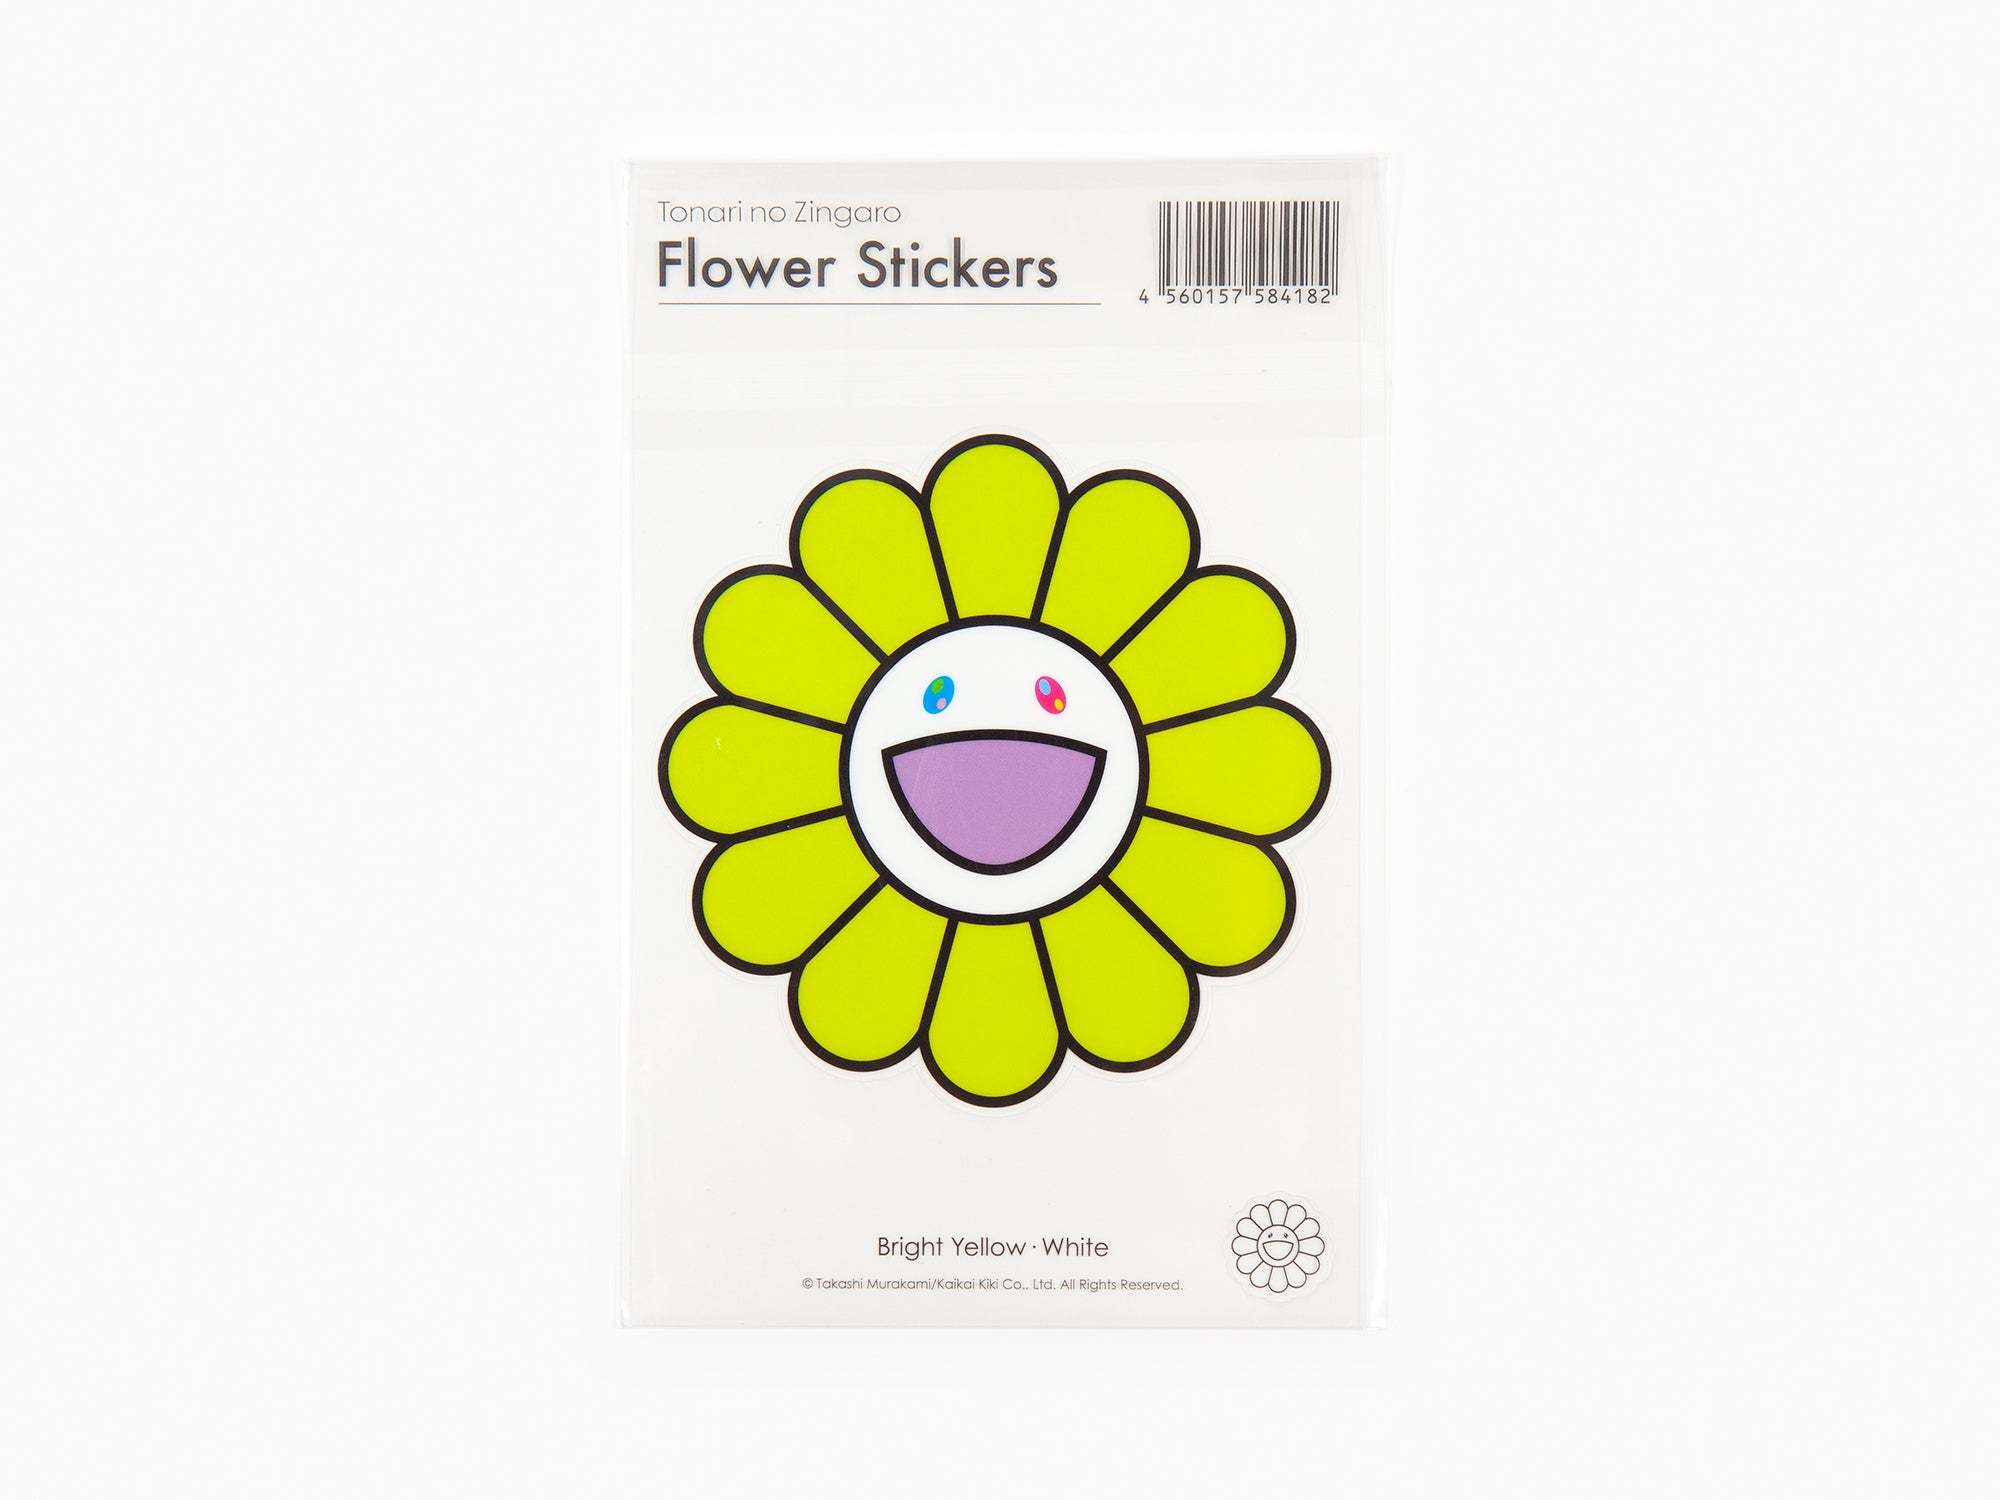 Takashi Murakami - Flower Stickers - Bright Yellow x White